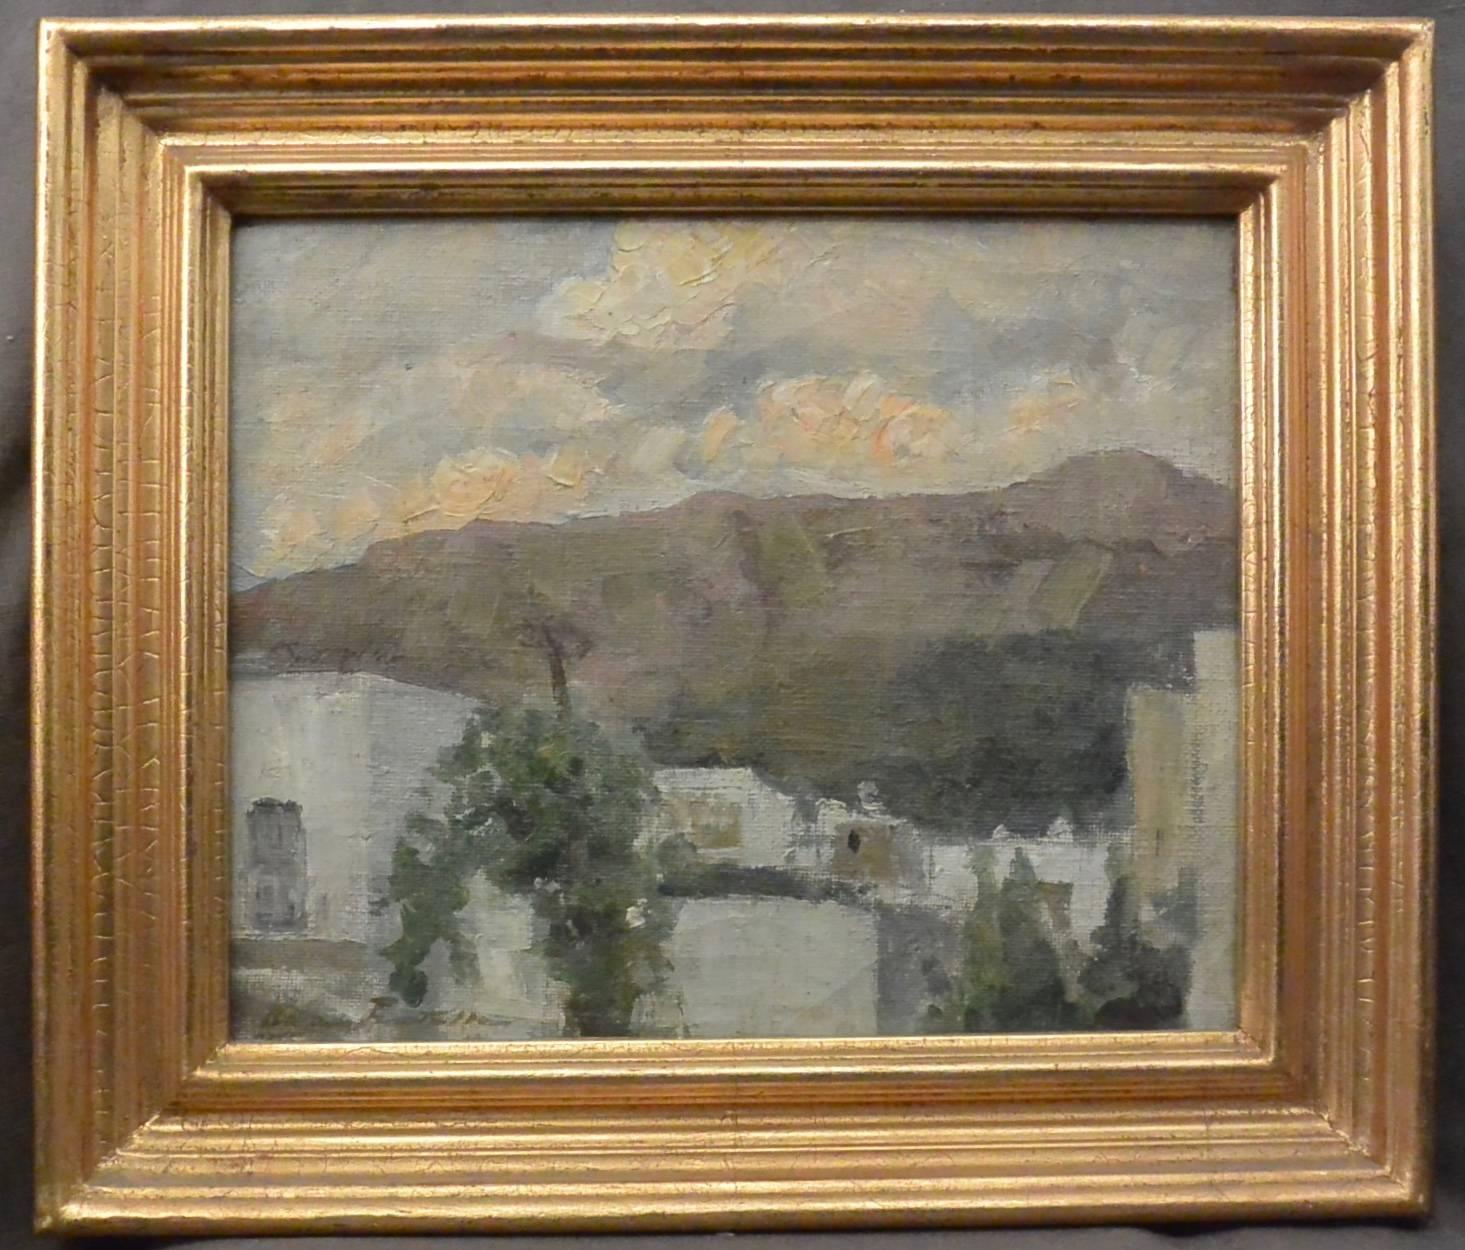 Ada Pratella (1901-1929) Maisons à Capri, huile sur toile dans un cadre doré, signée en bas à gauche. Italie, vers 1920
Dimensions : 17